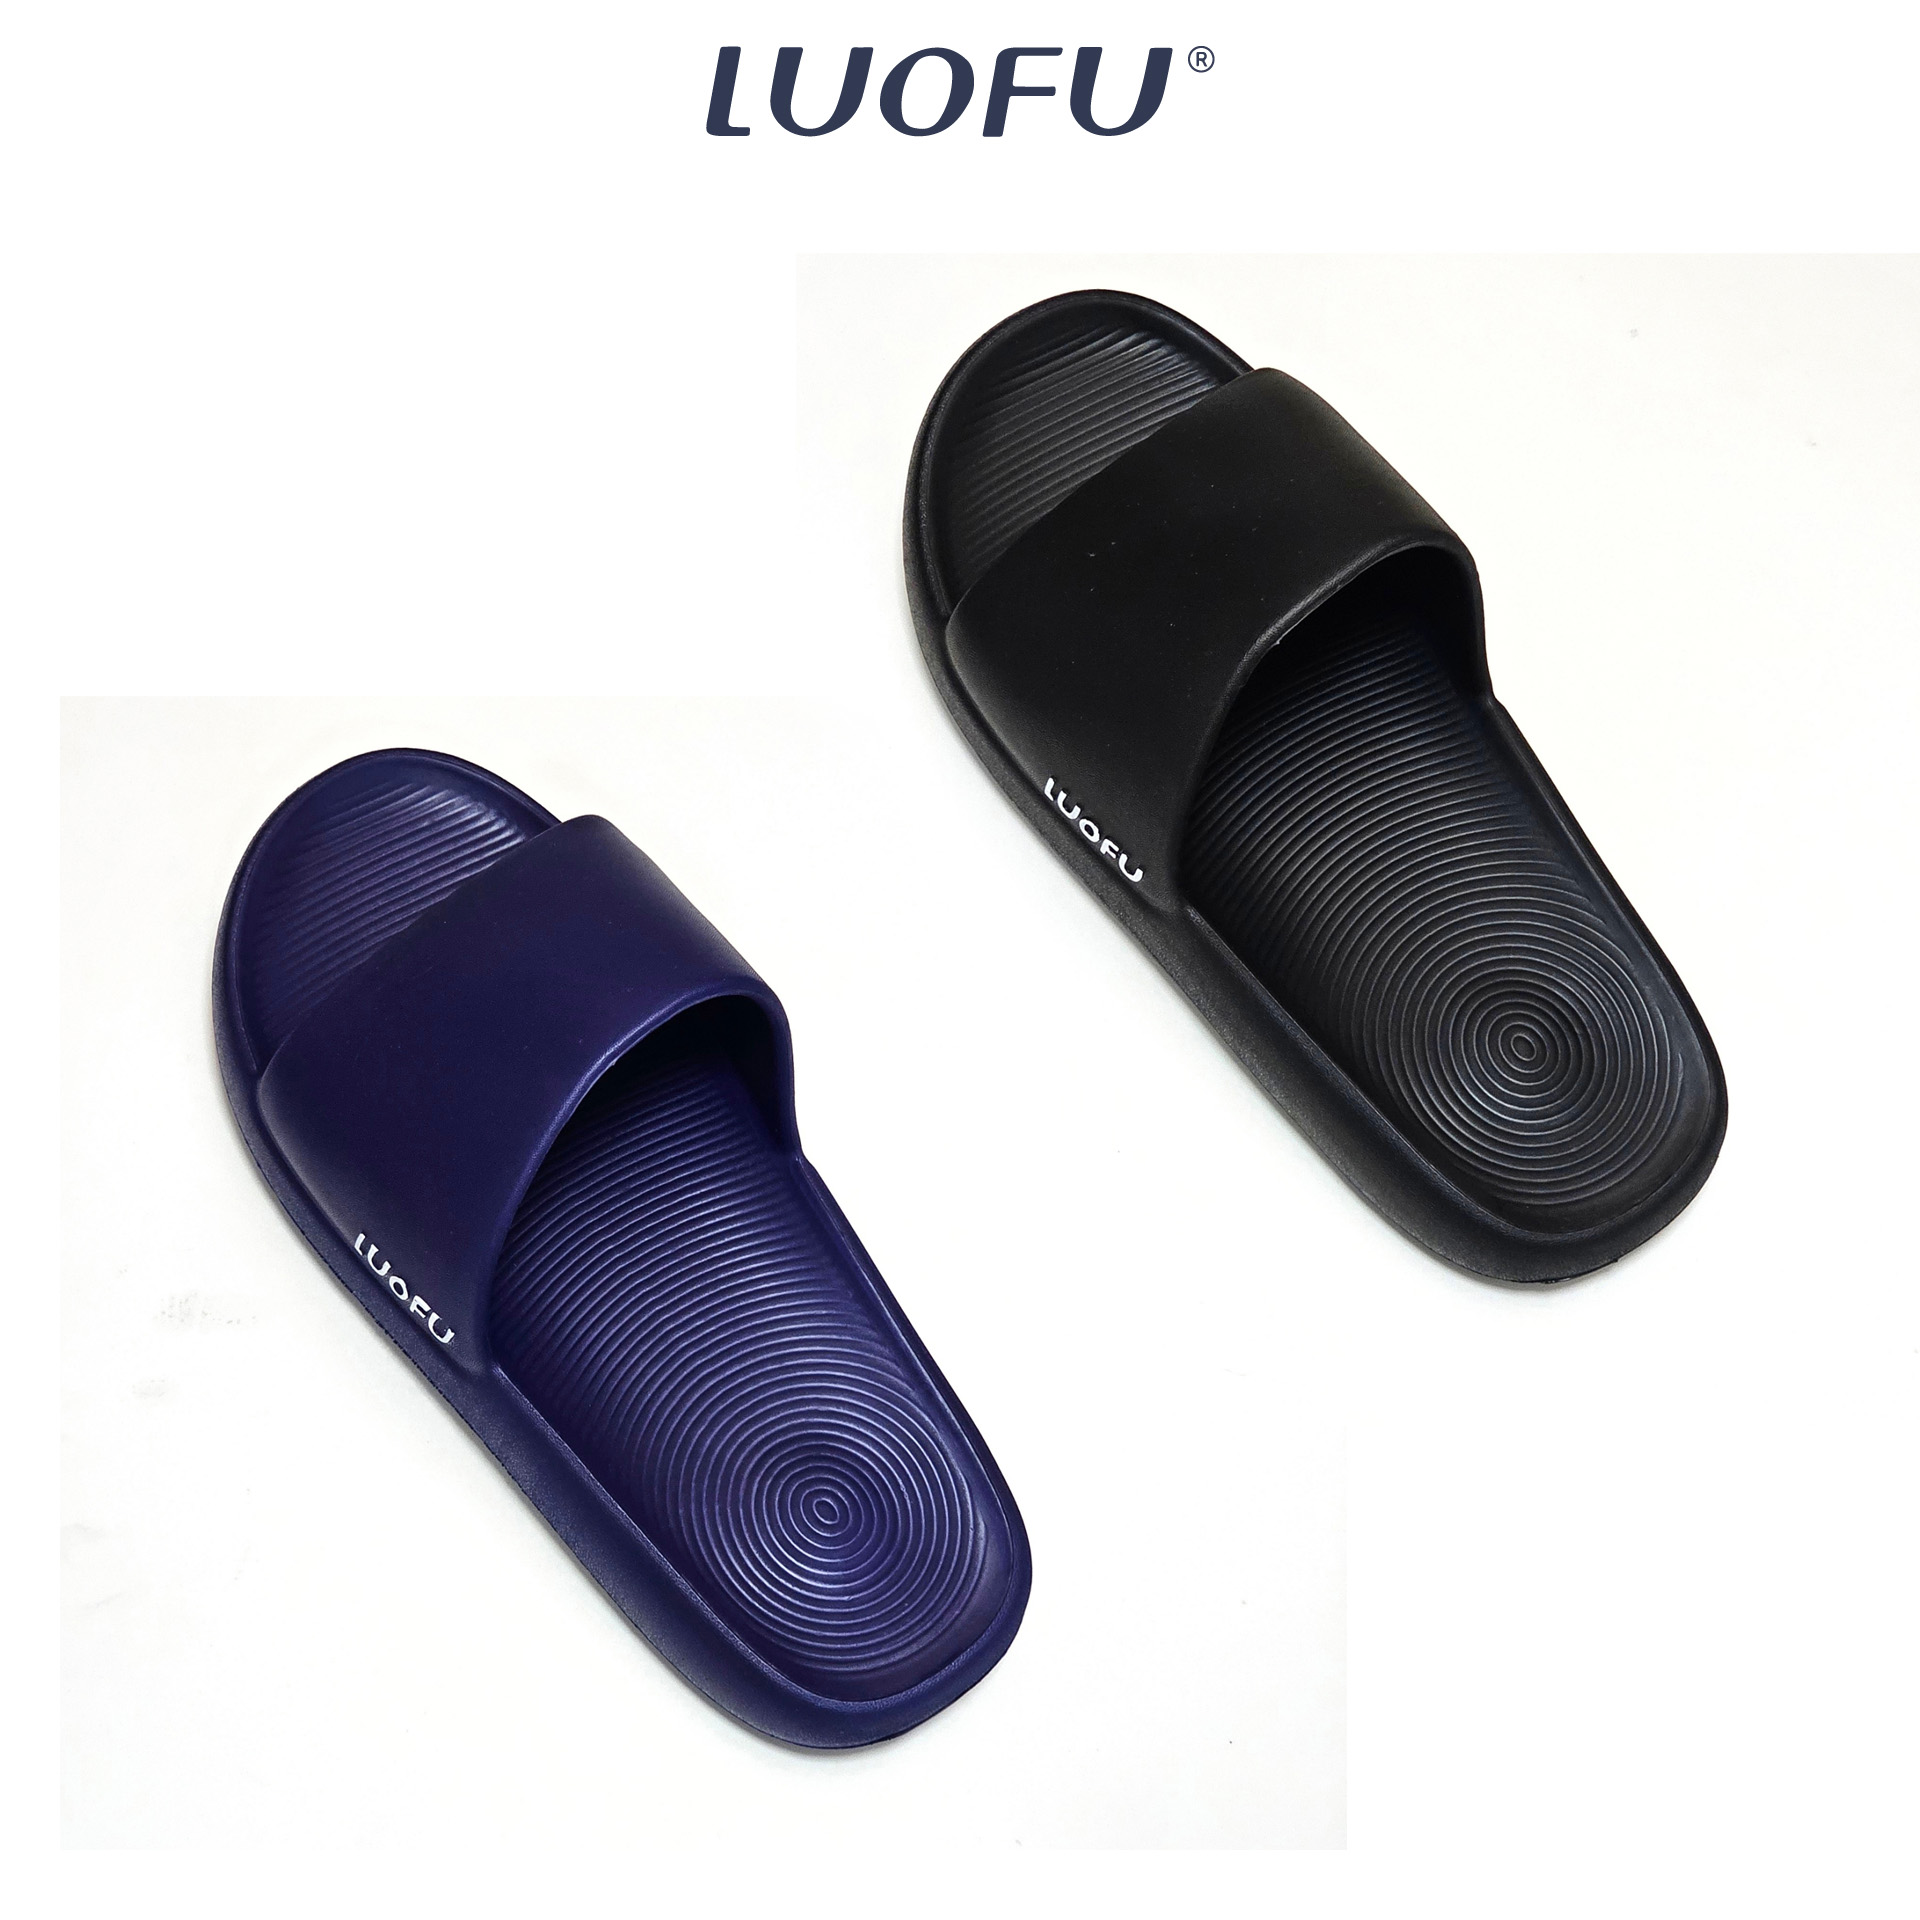 LUOFU รองเท้าแตะผู้ชาย รองเท้าแตะแบบสวม แฟชั่น ใส่สบายเท้า รหัส E6225